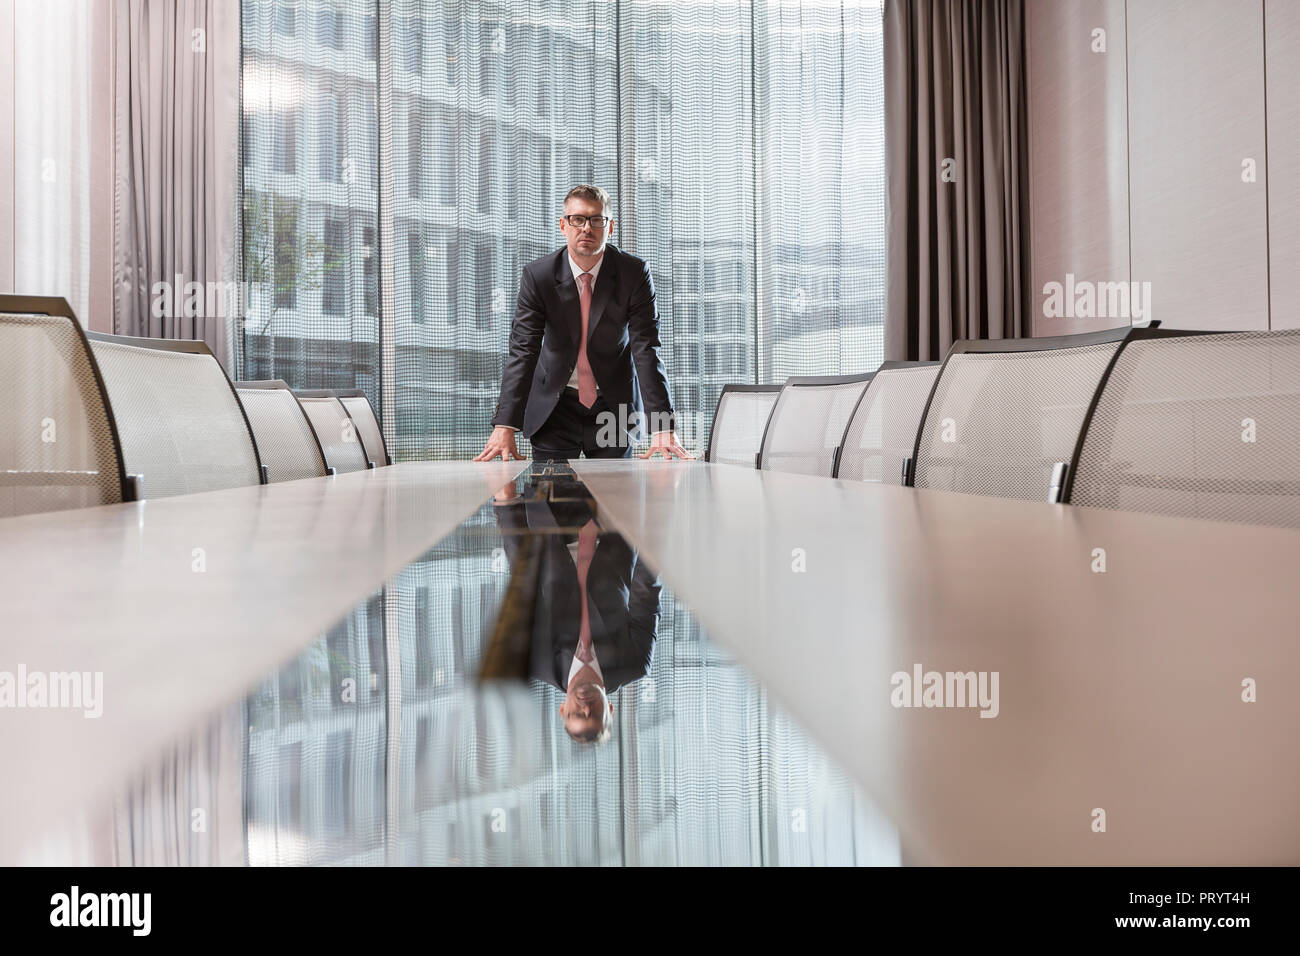 Polen, Warzawa, Geschäftsmann, stehen am Konferenztisch in hotel Stockfoto